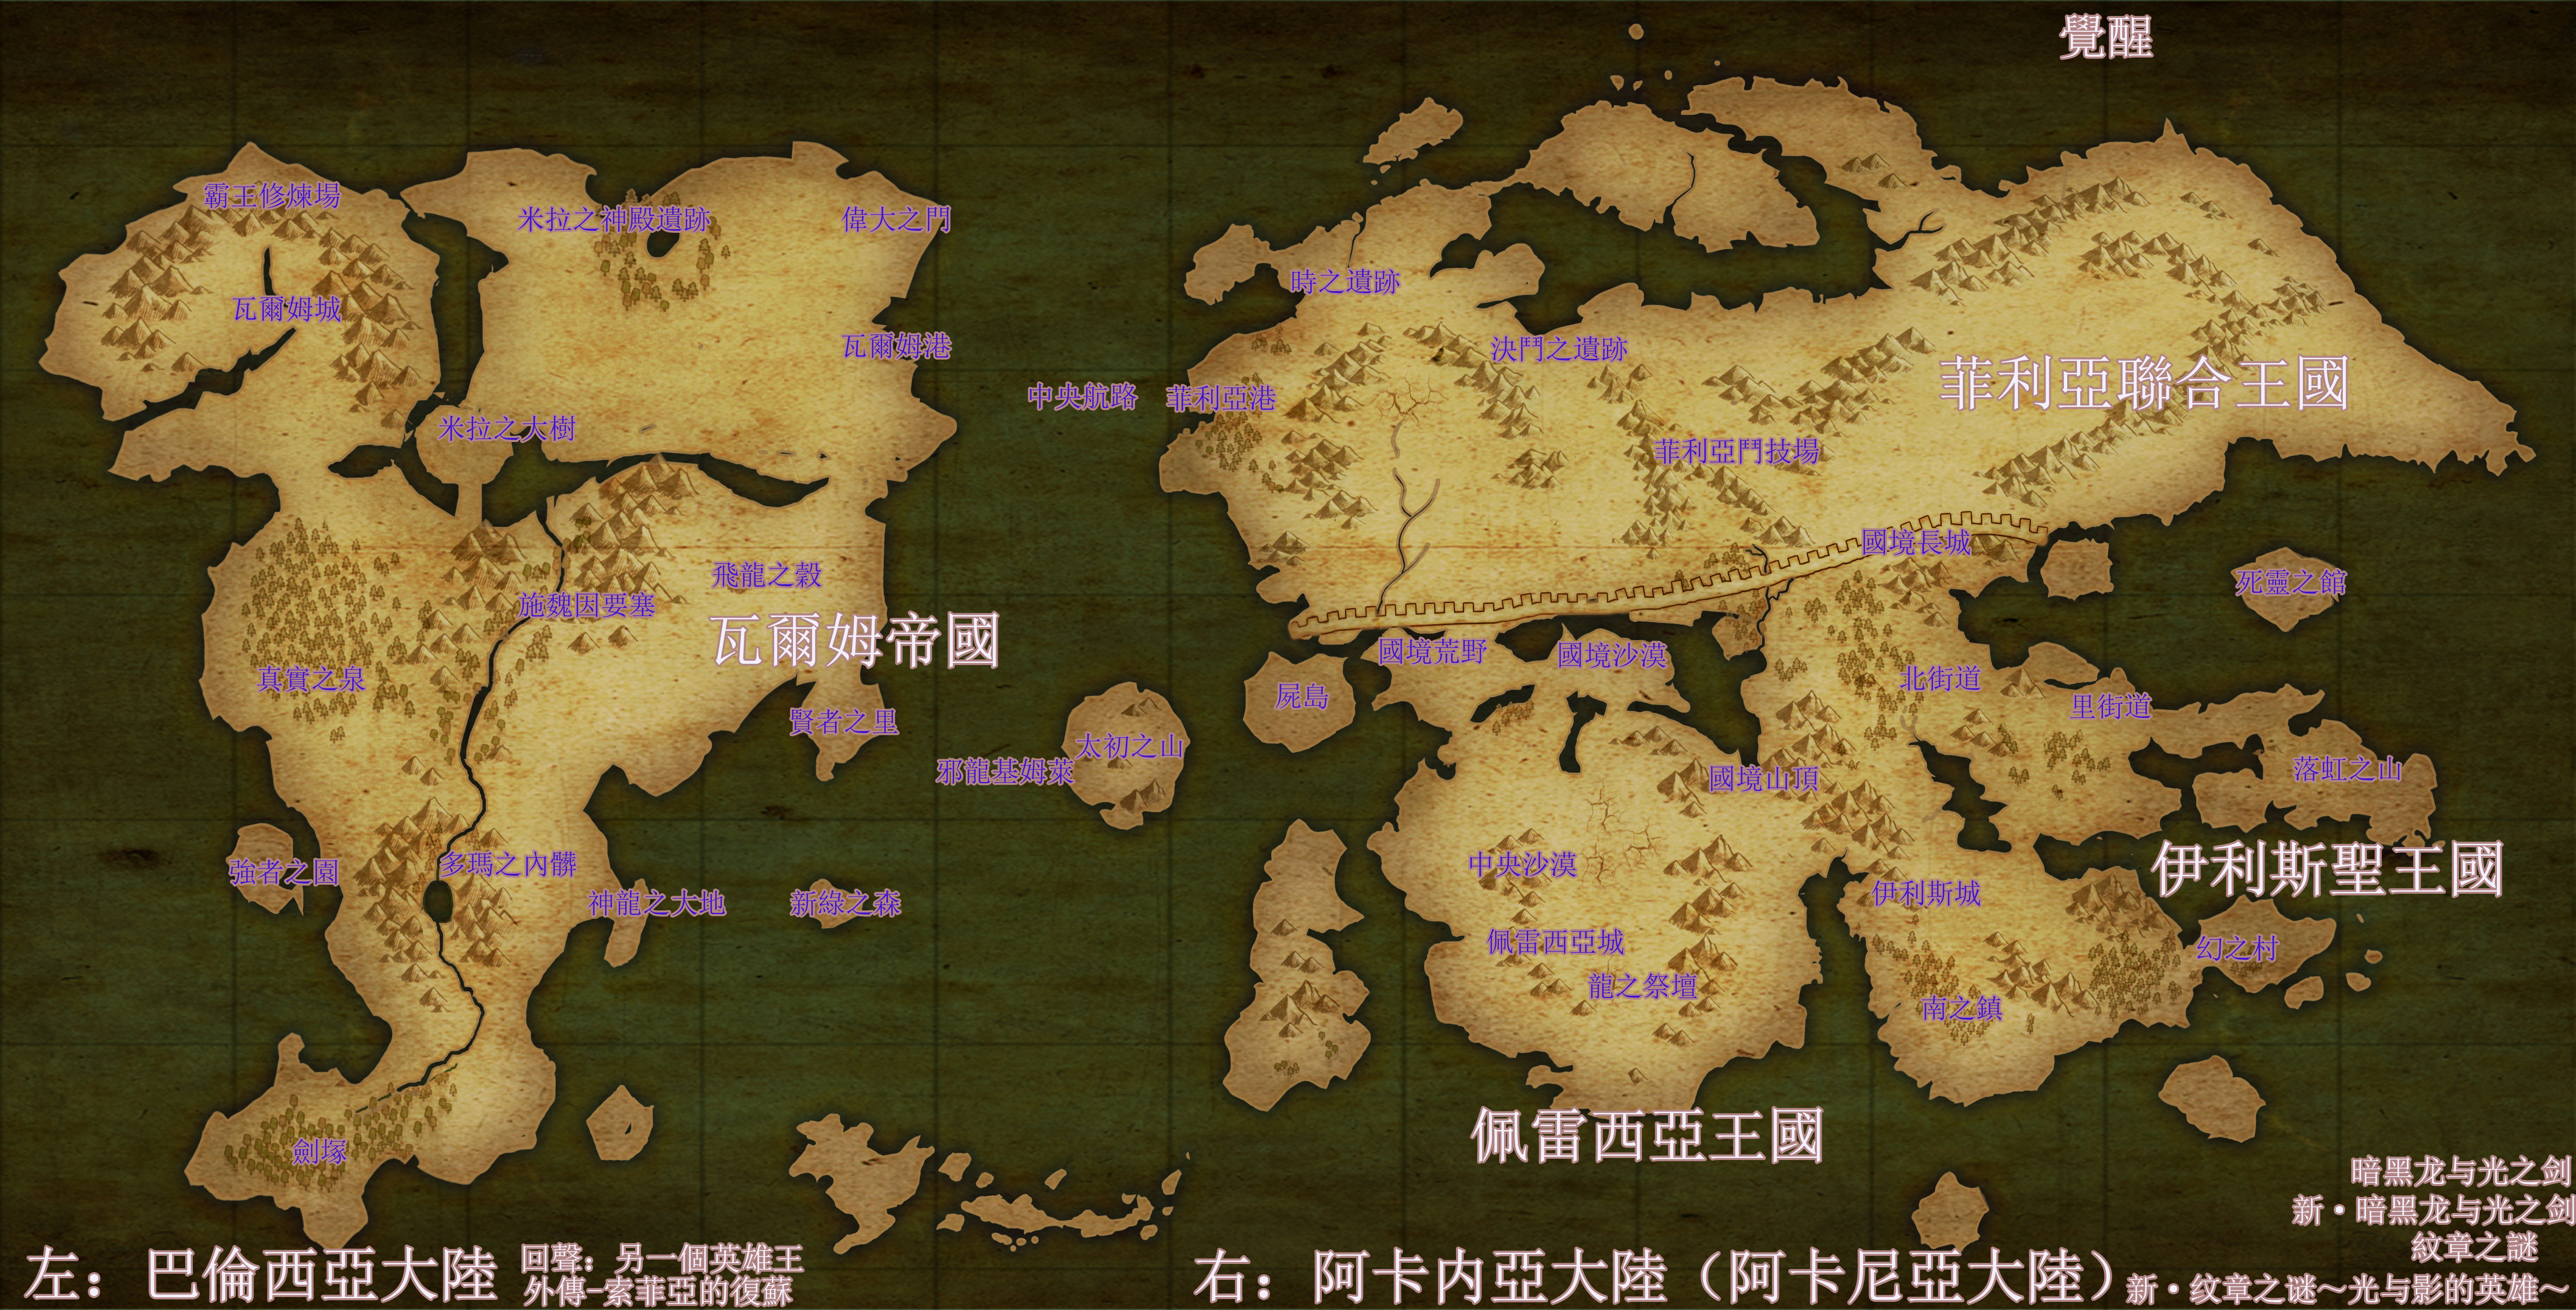 《火焰纹章》系列中文地图